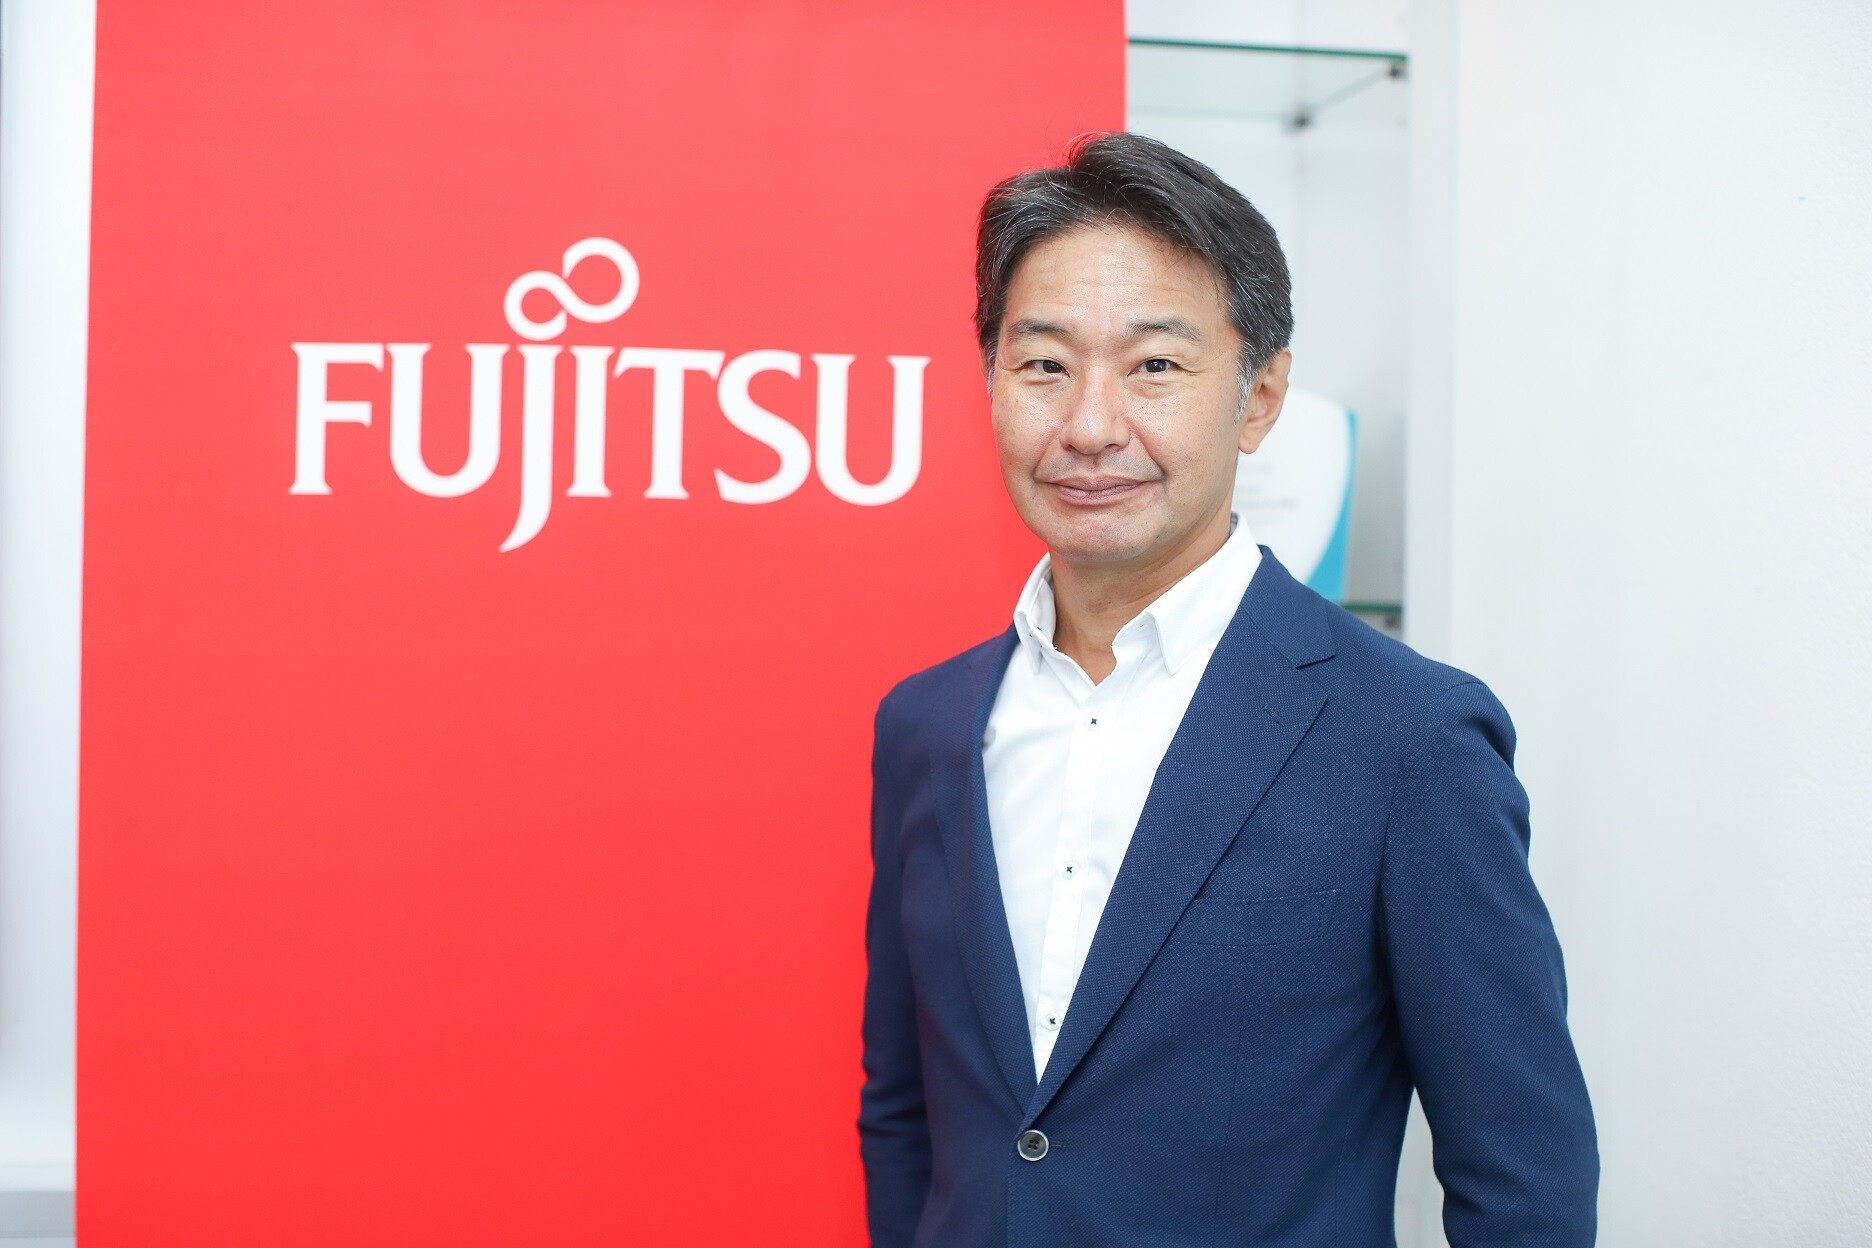 ฟูจิตสึเปิดตัวแบรนด์ธุรกิจใหม่ Fujitsu Uvance มุ่งแก้ปัญหาสังคม ด้วยนวัตกรรมดิจิทัลเพื่อสร้างโลกที่ยั่งยืน